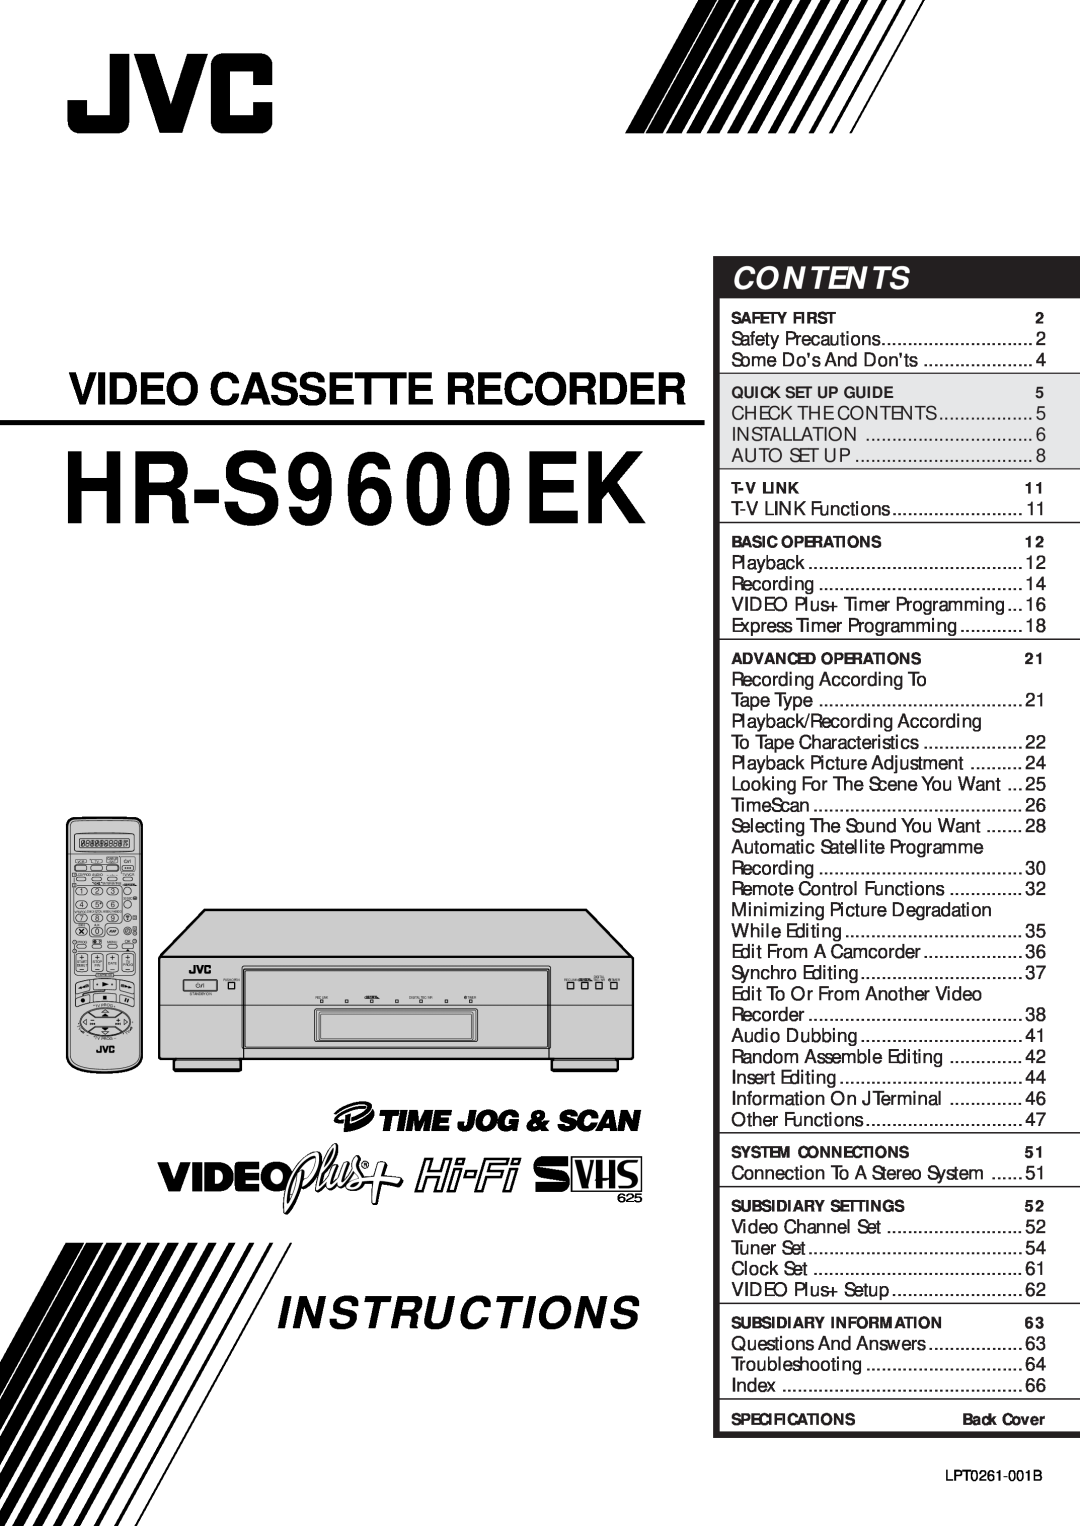 JVC HR-S9600EK setup guide Instructions, Video Cassette Recorder, Contents, Safety First, Quick Set Up Guide, T-V Link 